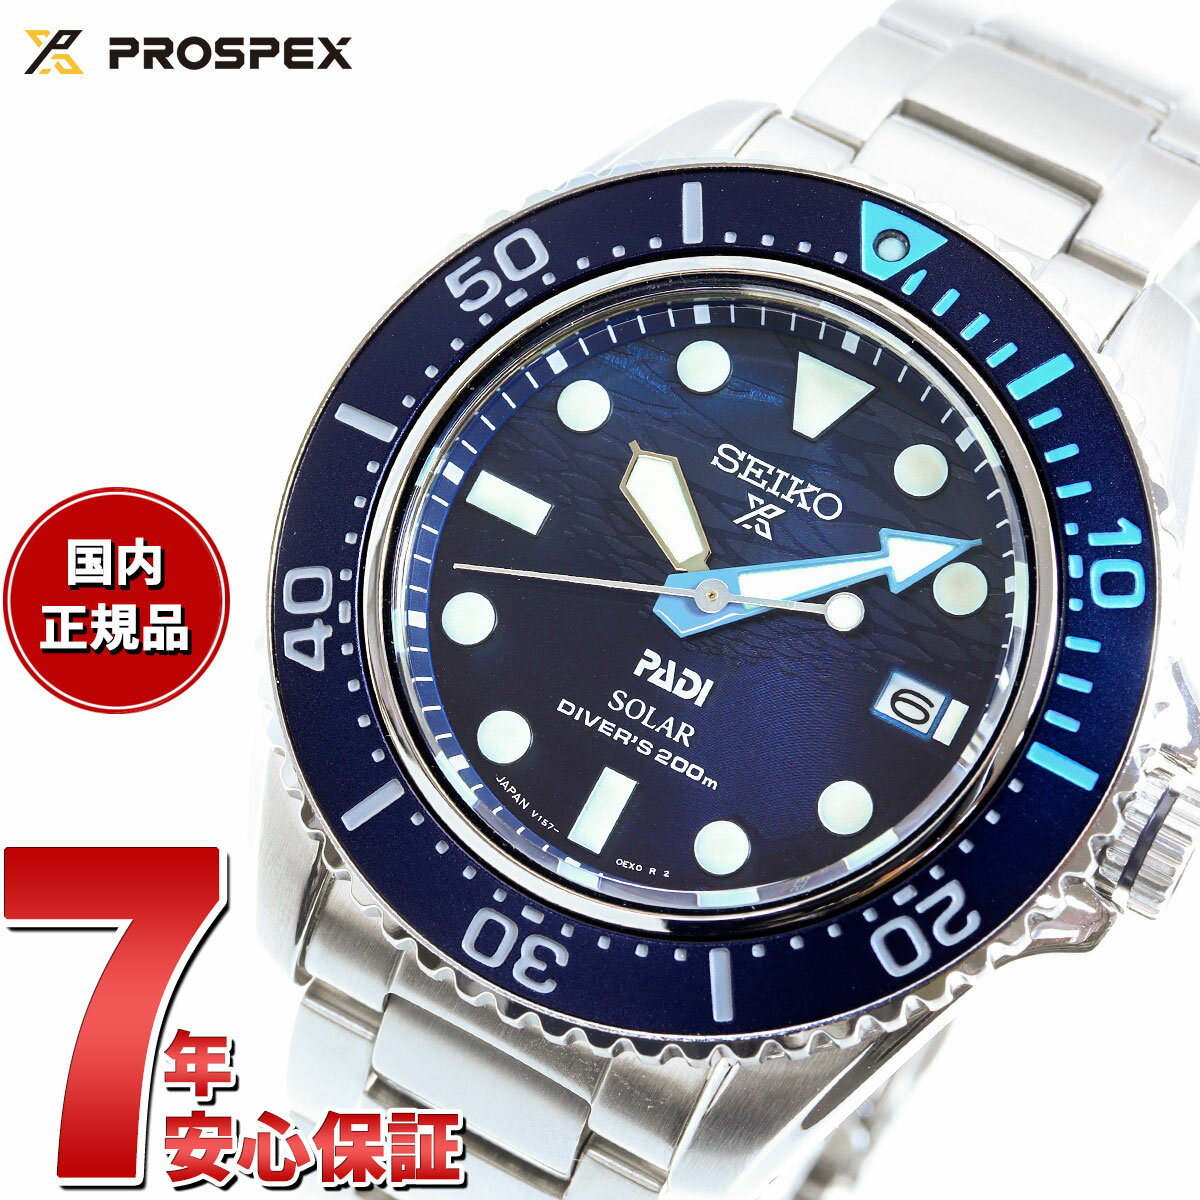 プロスペックス セイコー プロスペックス SEIKO PROSPEX ダイバースキューバ ソーラー PADIスペシャルモデル 腕時計 メンズ SBDJ057